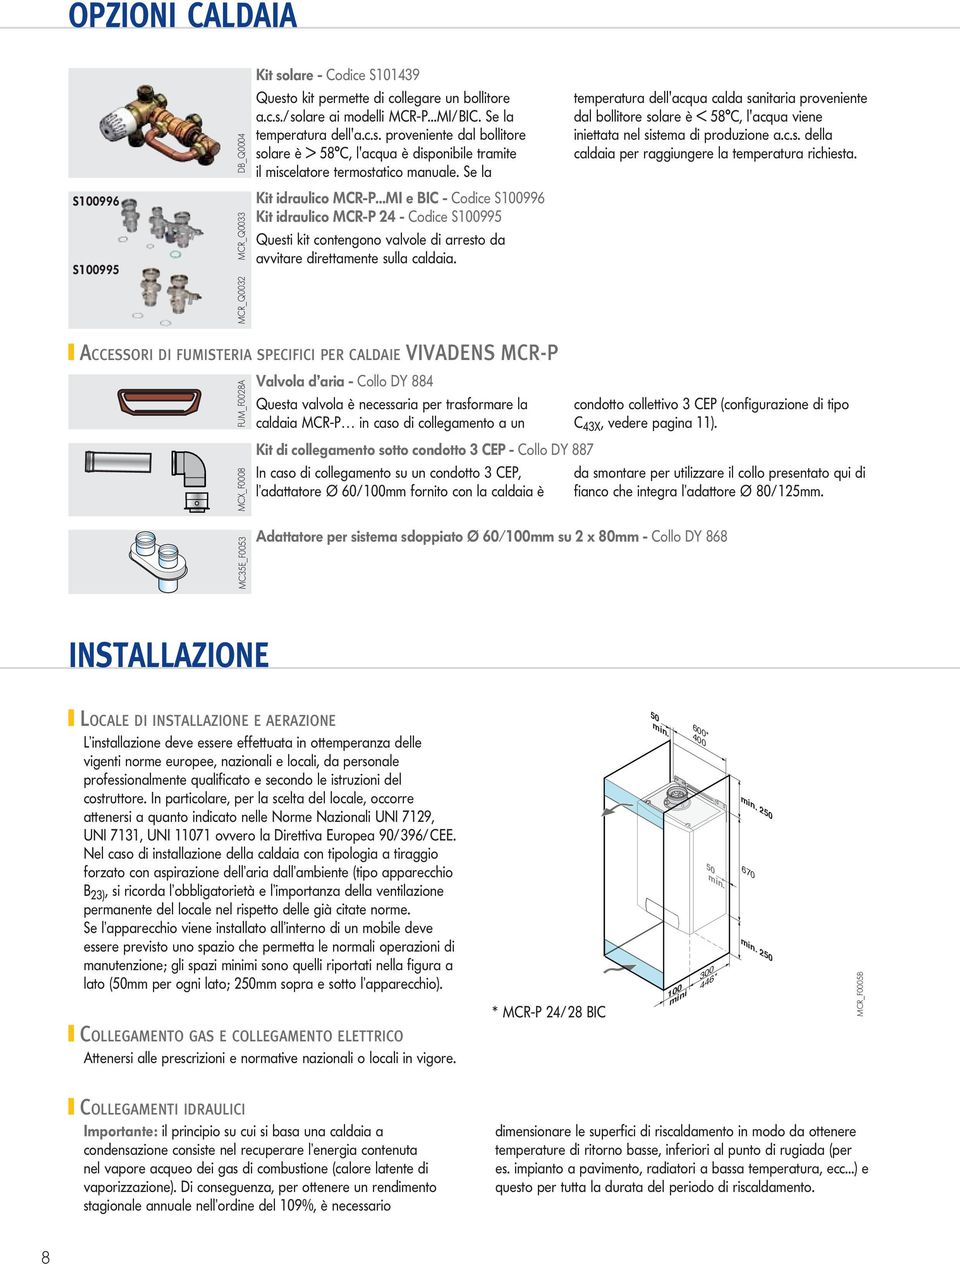 ..MI e BIC - Codice S1006 Kit idraulico MCR-P 24 - Codice S1005 Questi kit contengono valvole di arresto da avvitare direttamente sulla caldaia.